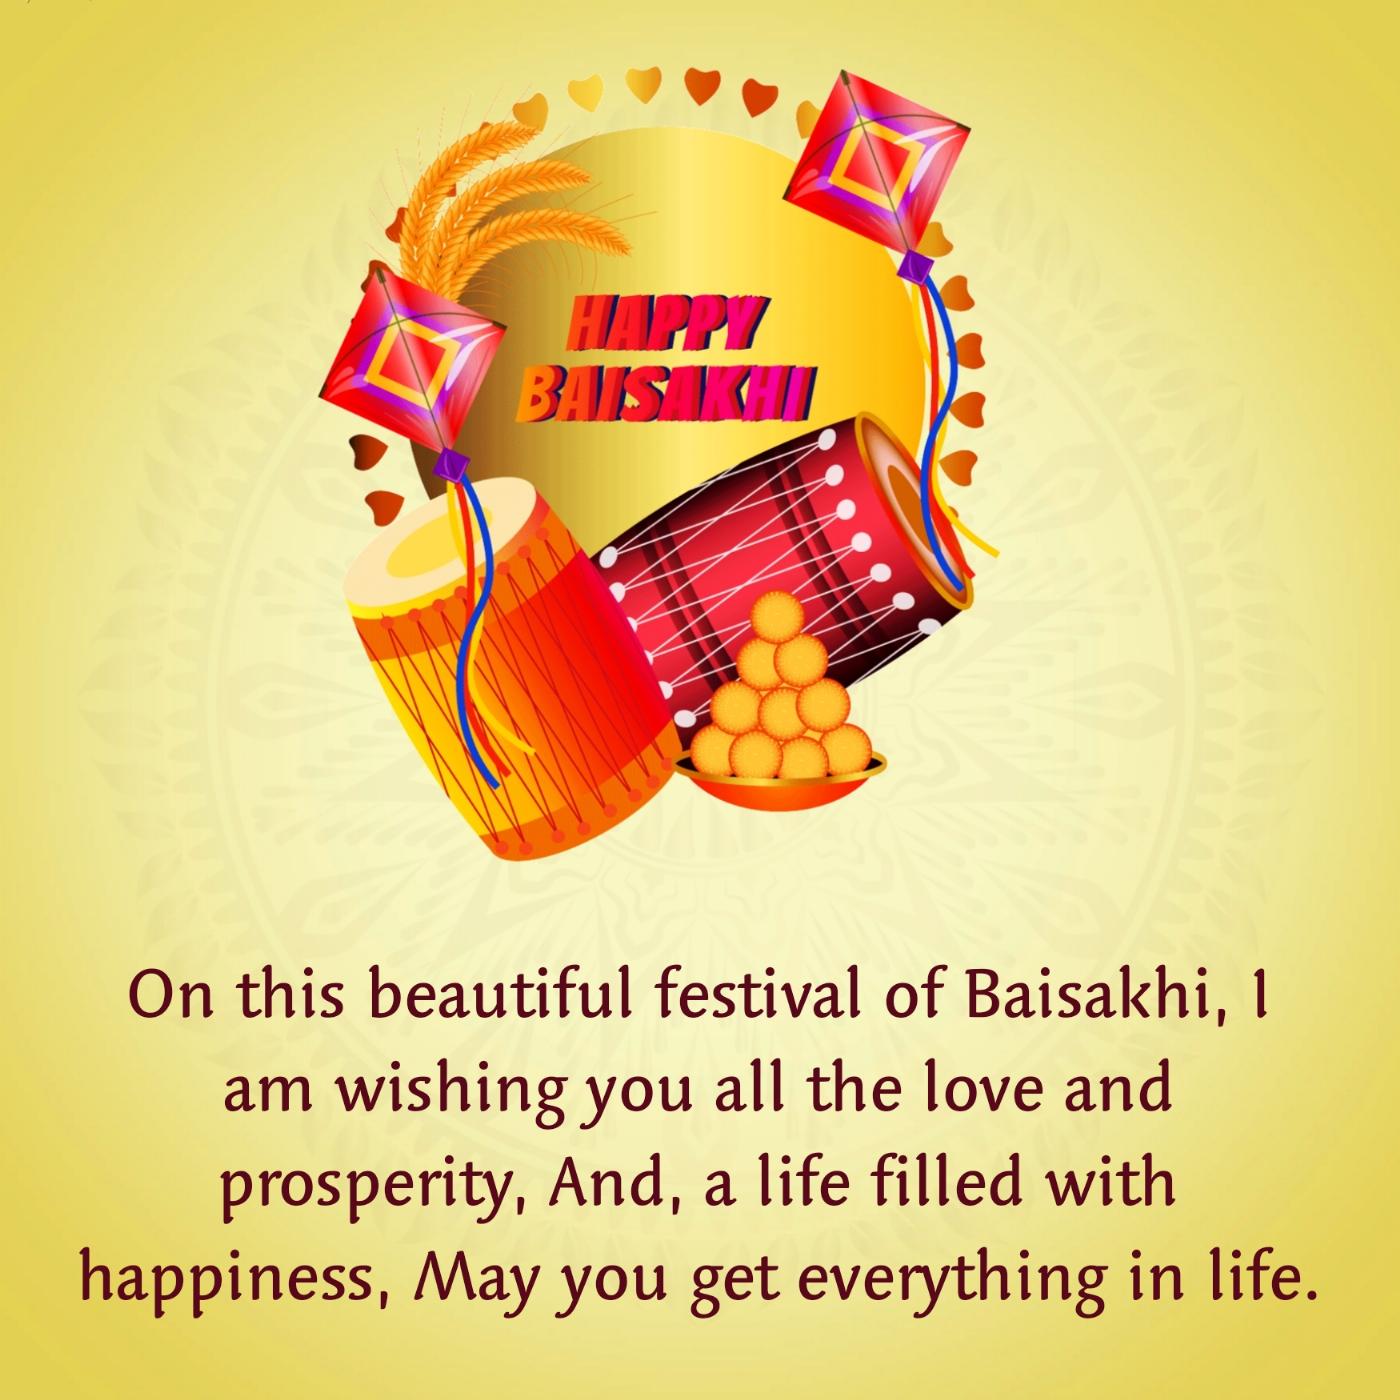 On this beautiful festival of Baisakhi I am wishing you